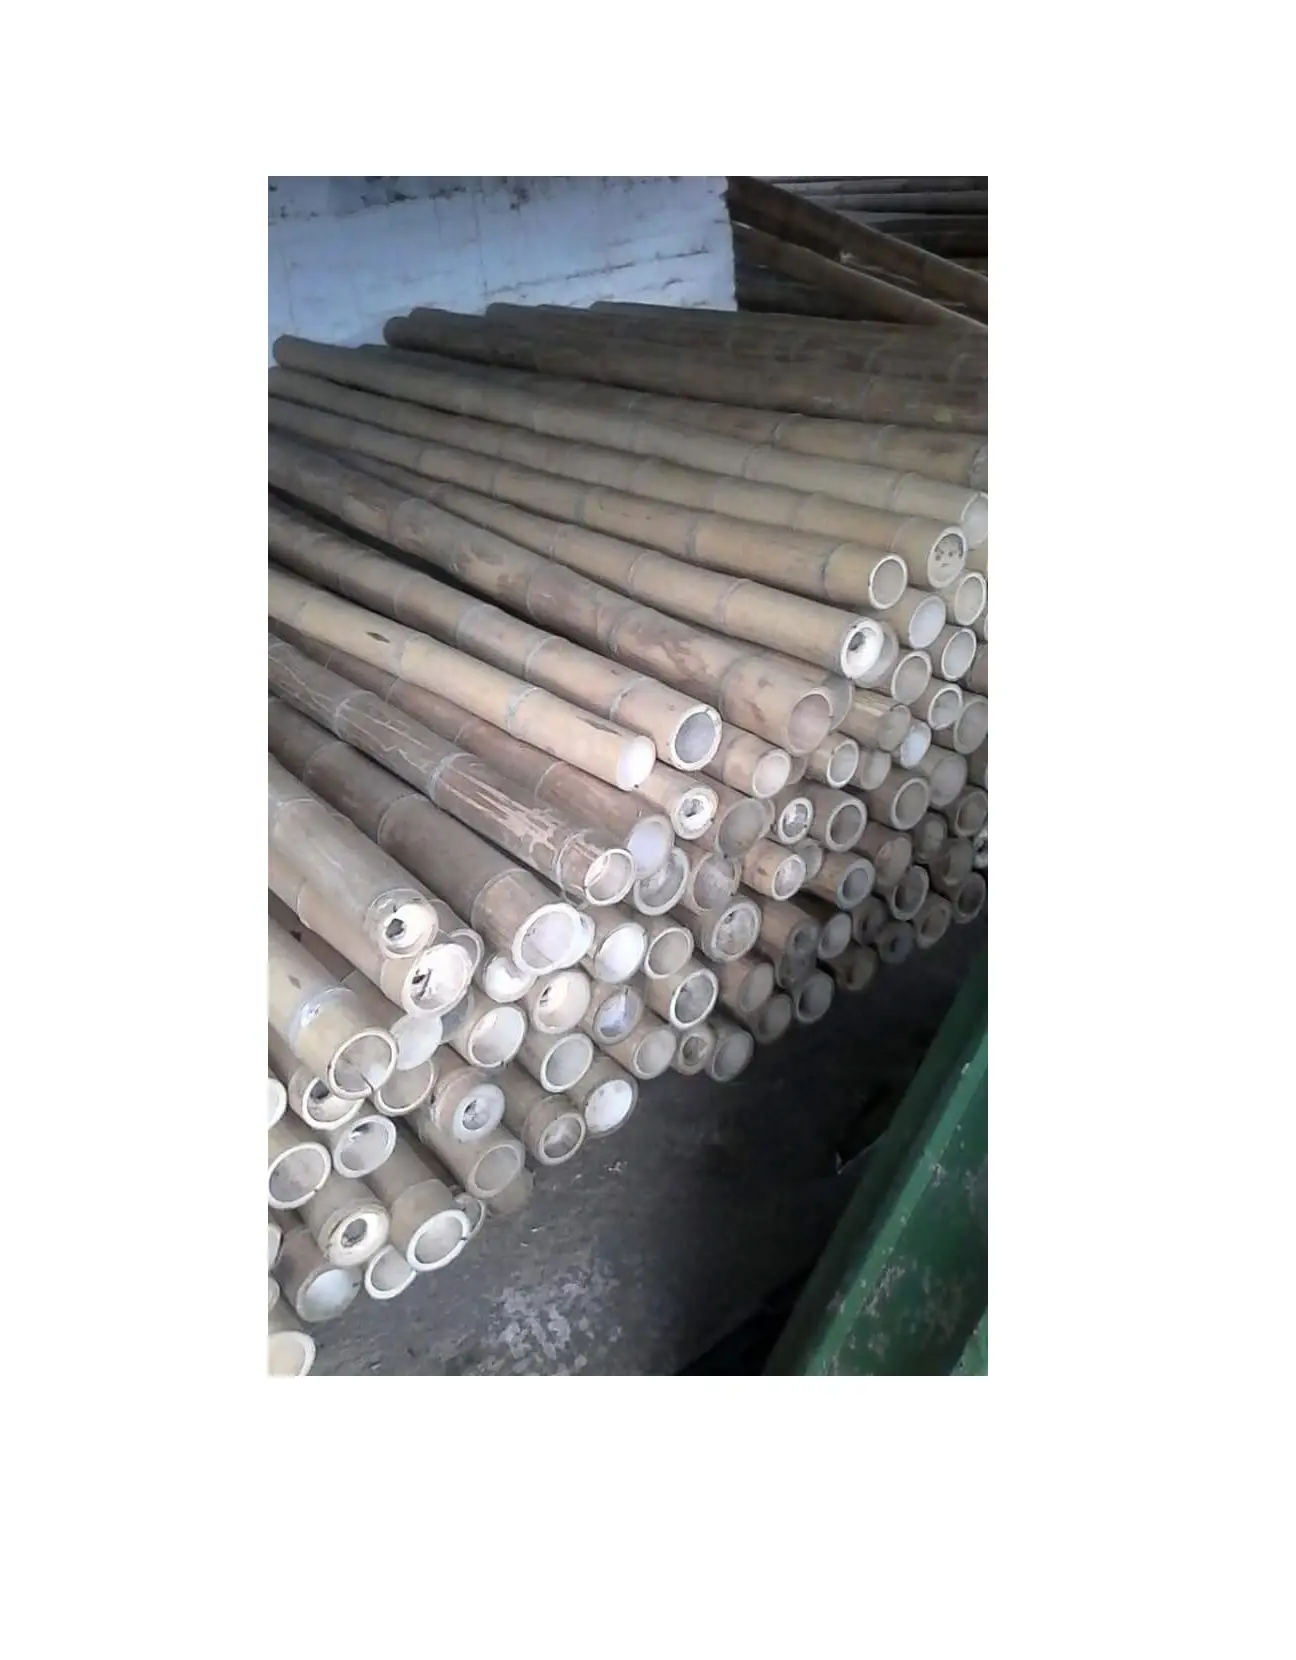 Üst üretici doğal tedavi bambu direkleri vietnam'dan toplu olarak düz kutup bambu